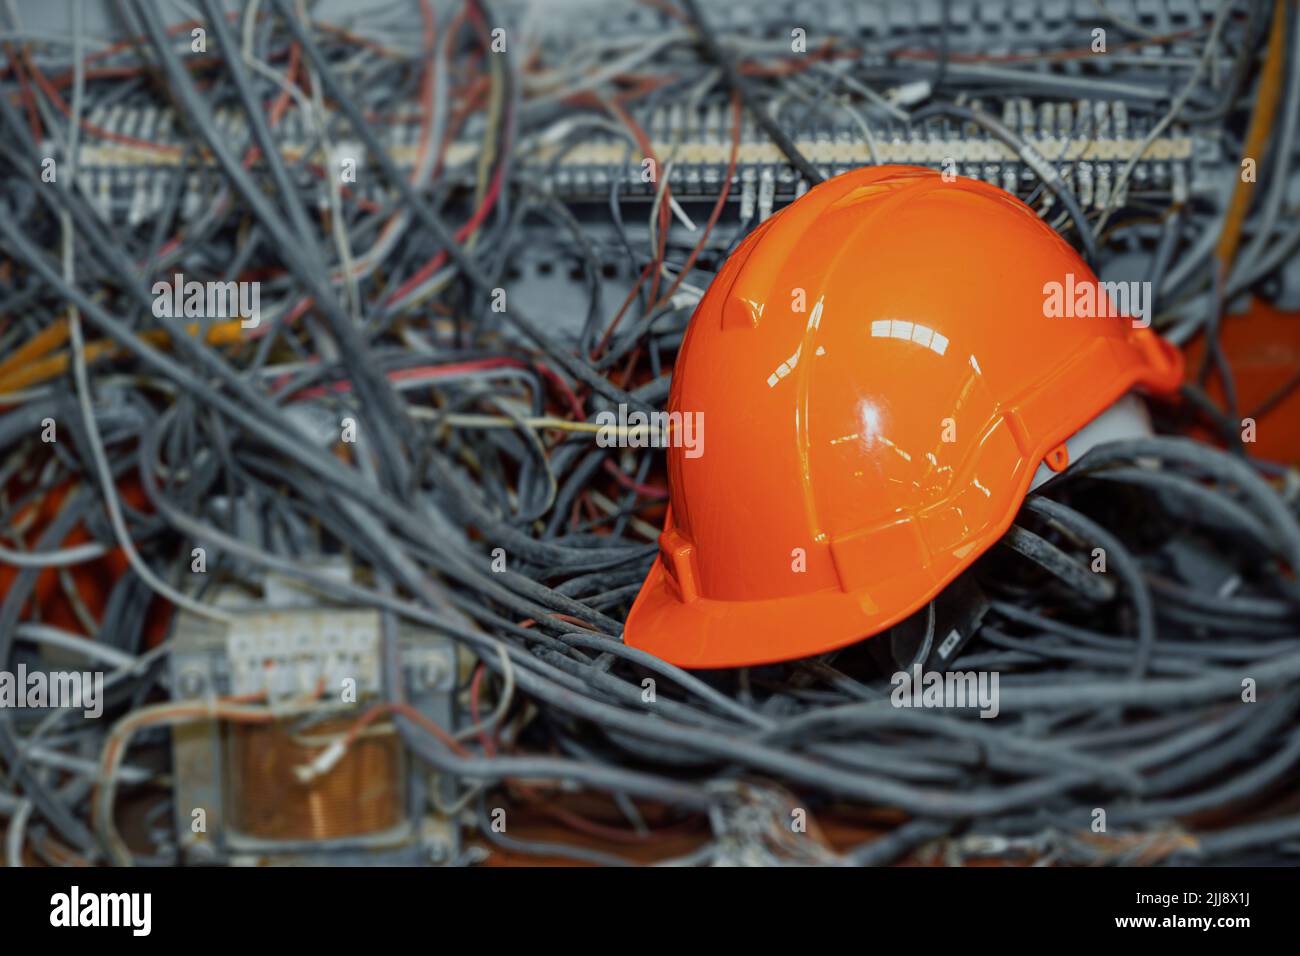 câbles électriques et lignes de communication désordonnés avec casque de sécurité pour travailleur d'ingénieur. Banque D'Images